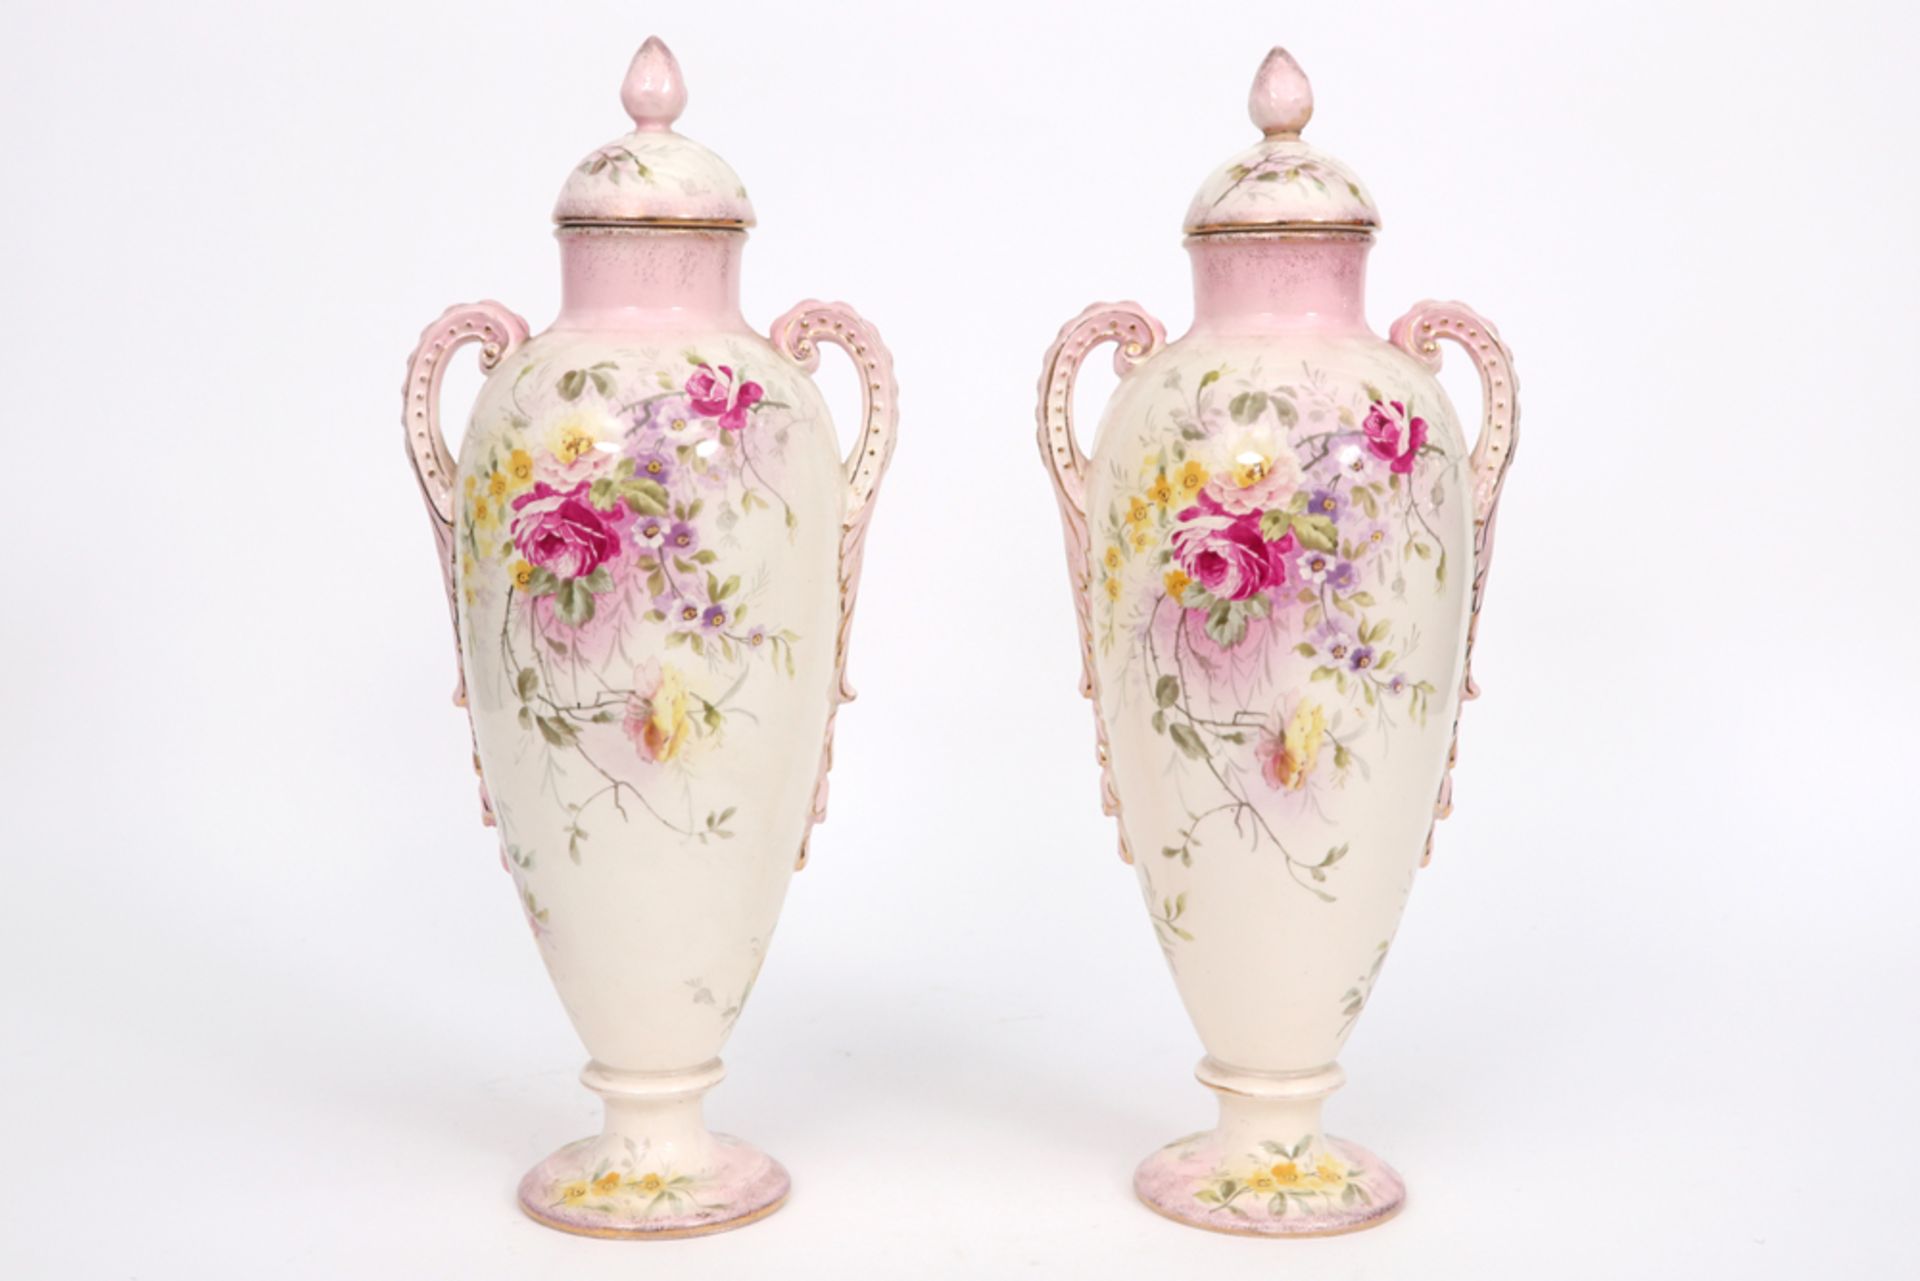 pair of late 19th Cent. lidded vases in marked ceramic || Paar gedekselde laat negentiende eeuwse